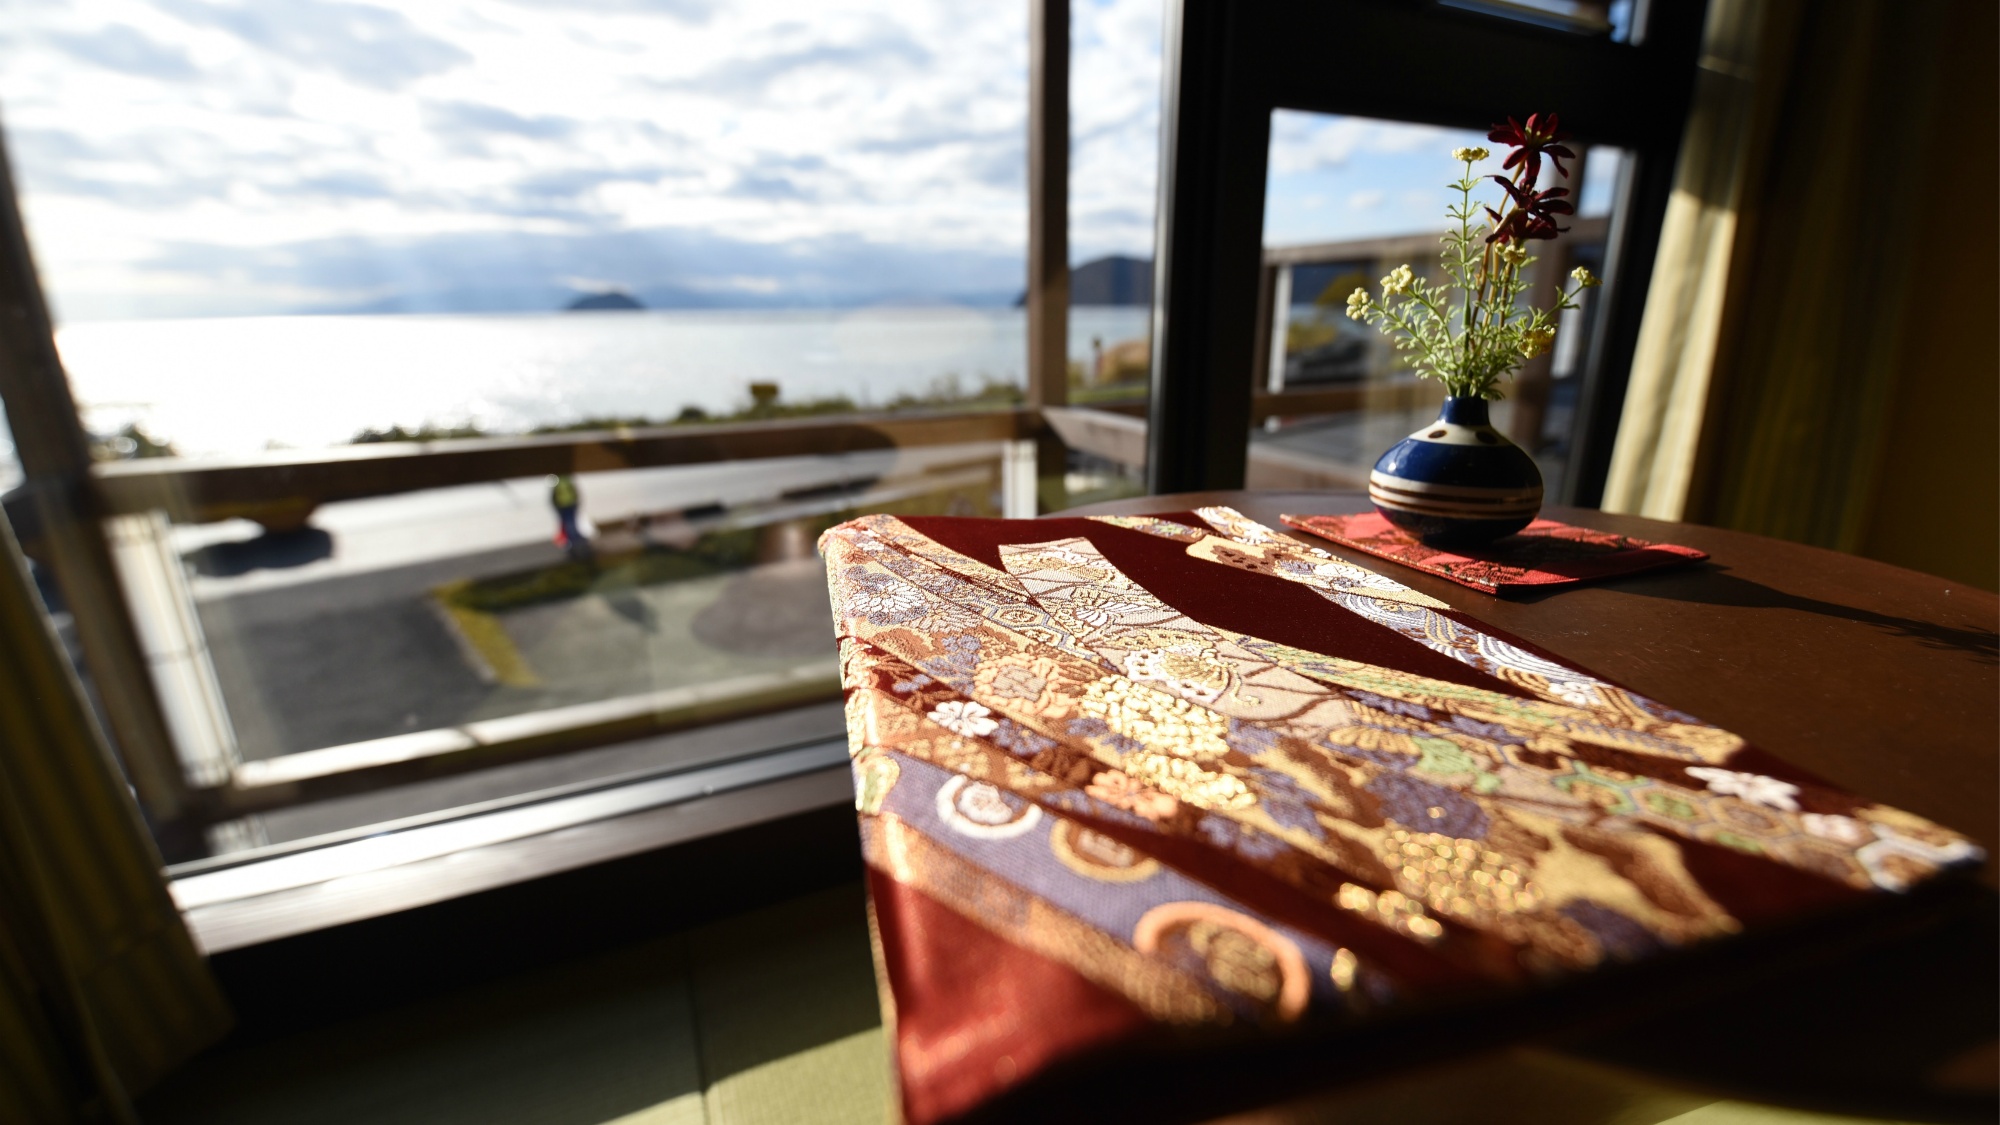 琵琶湖の景色のうつくしさと和にこだわったお部屋がお二人の大切な時間を素敵に演出してくれます。